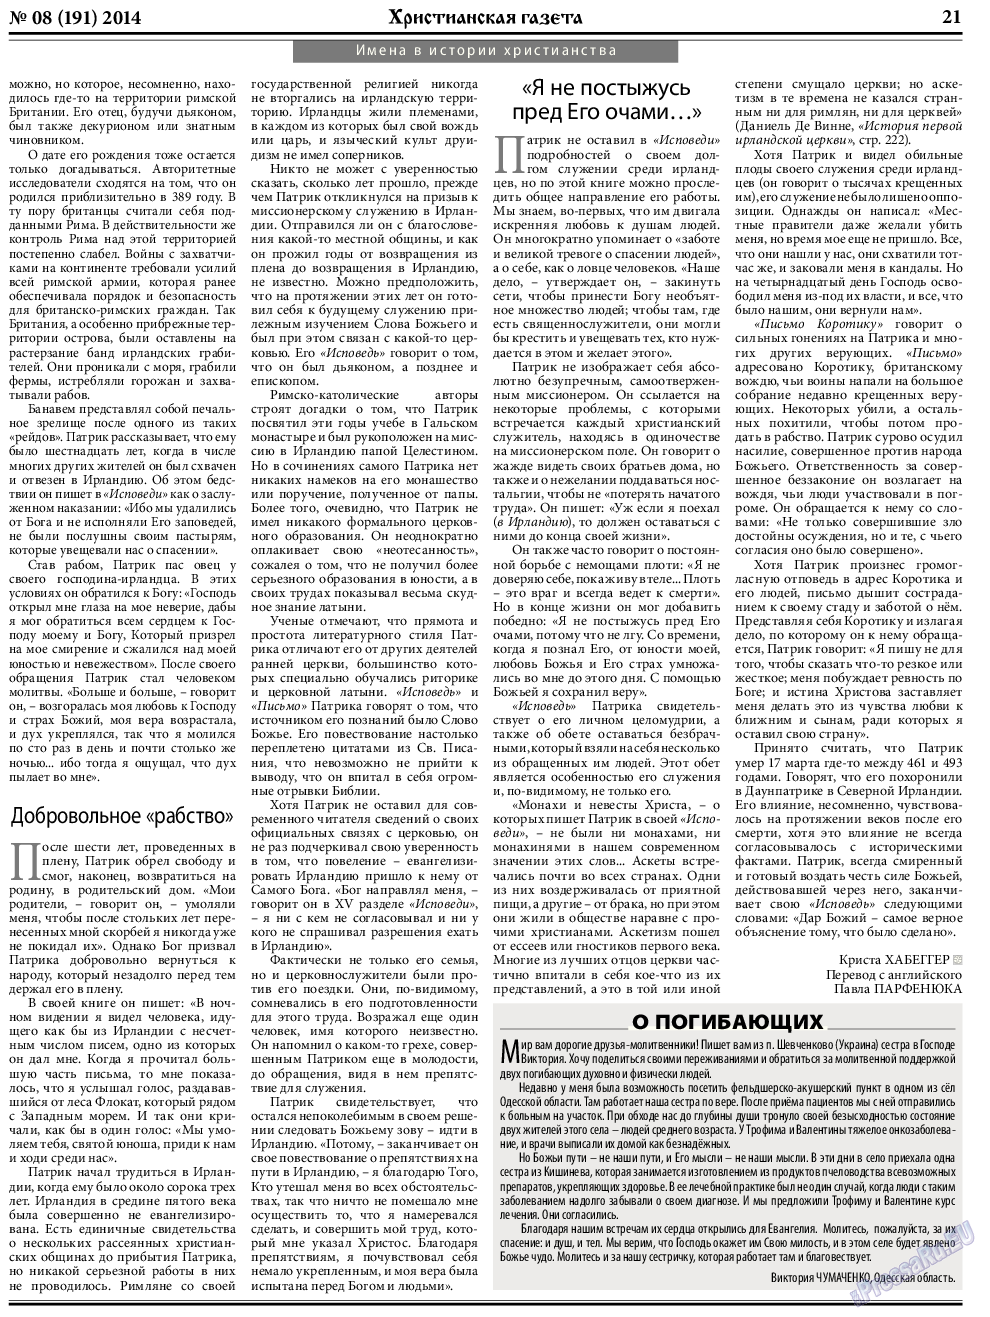 Христианская газета, газета. 2014 №8 стр.29